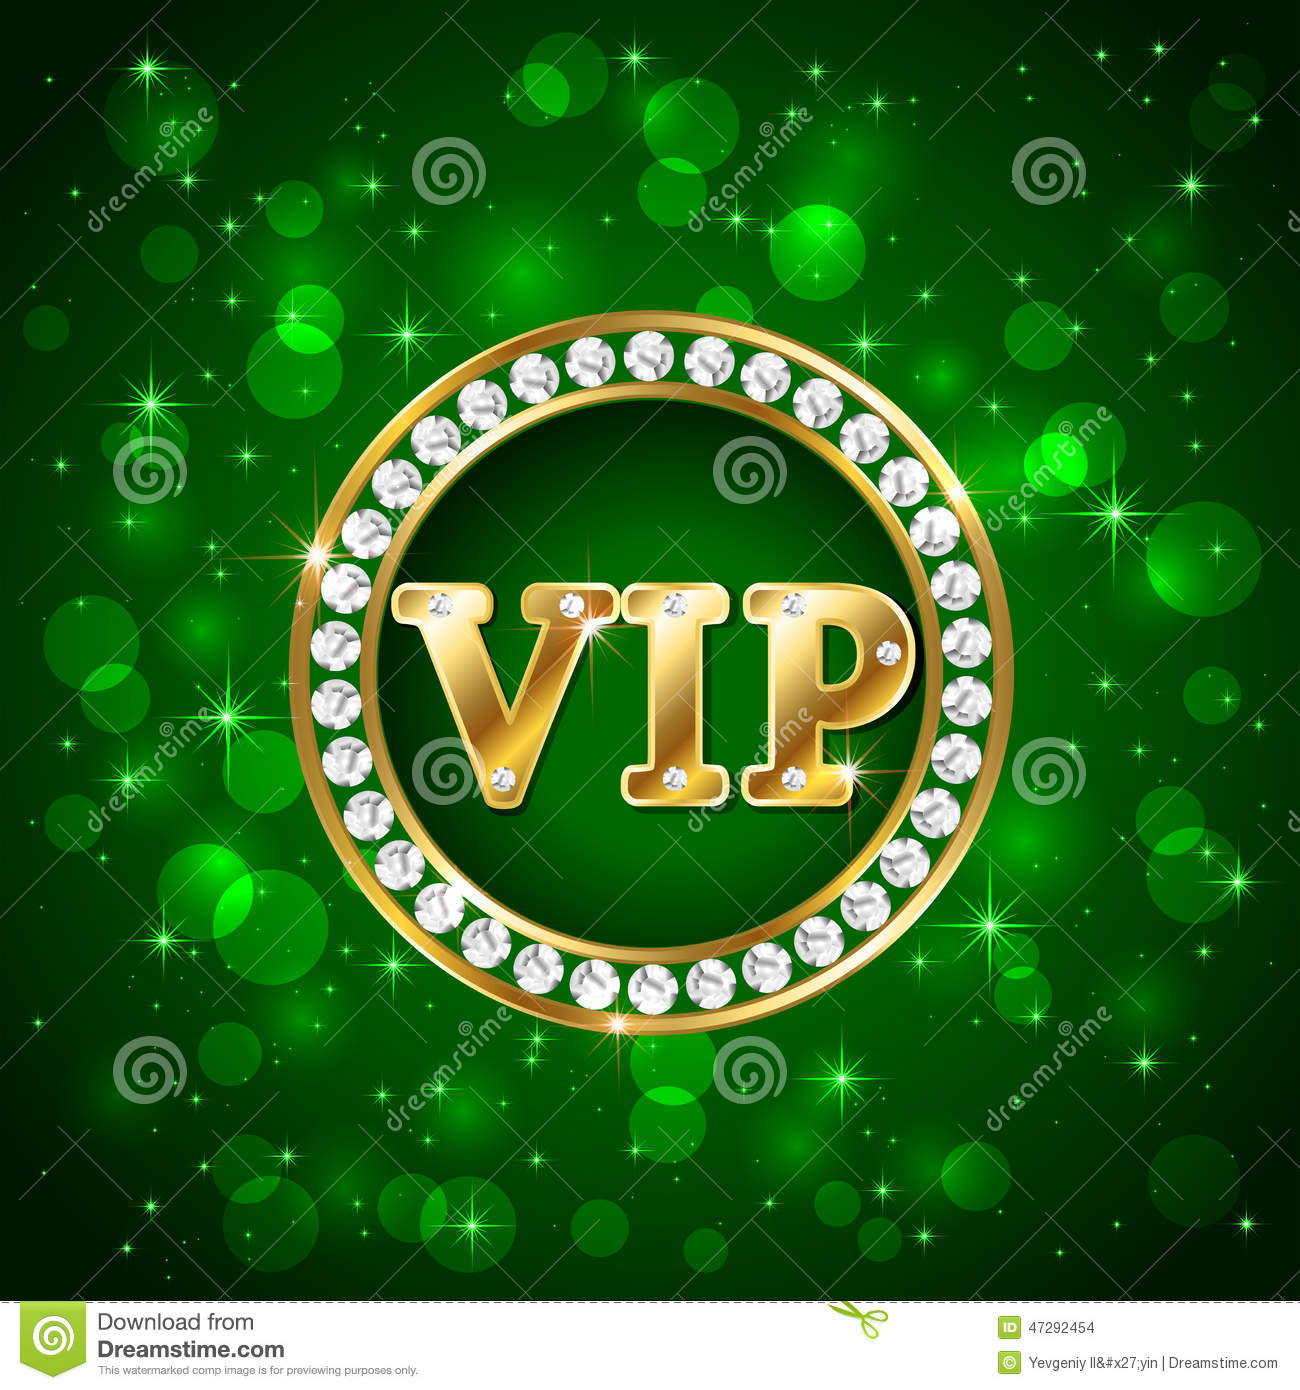 vip-green-background-starry-diamonds-golden-letters-illustration-47292454.jpg